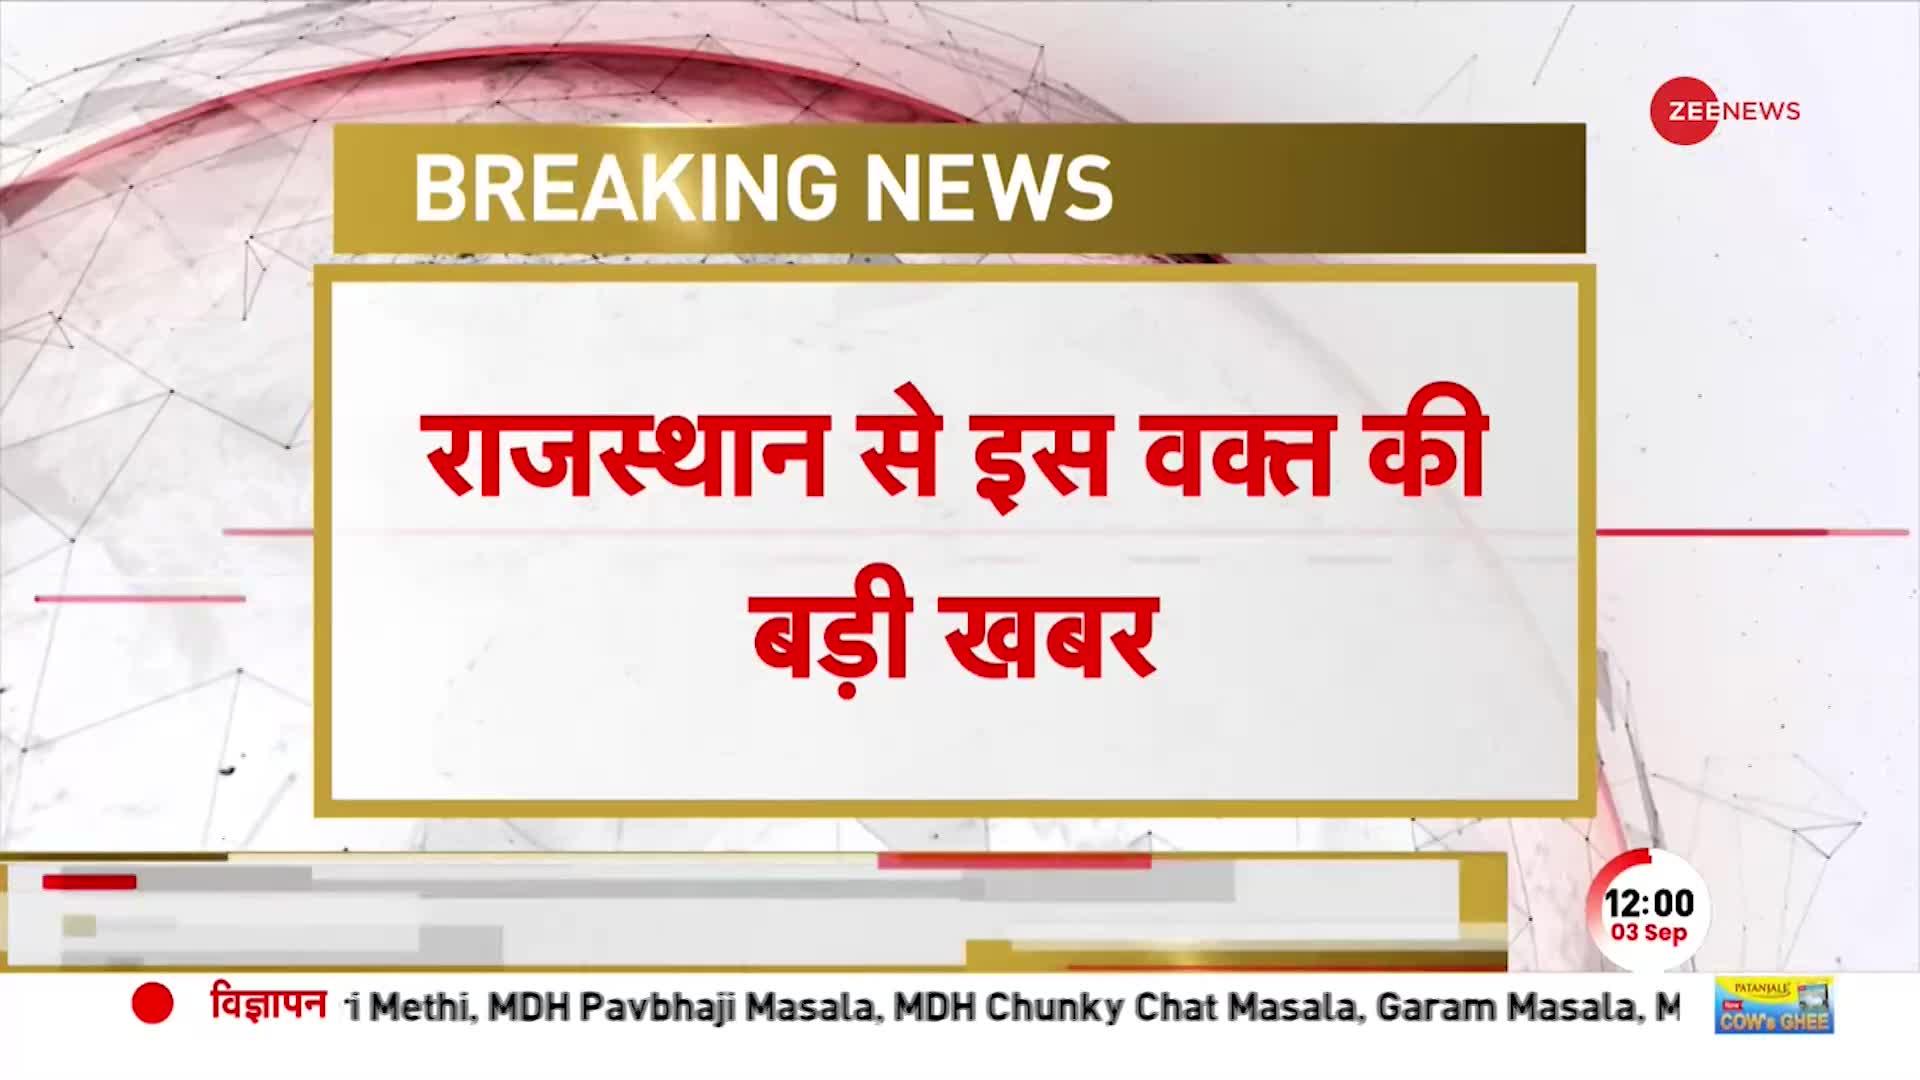 BREAKING NEWS: Rajasthan के Sawai Madhopur में BJP की Parivartan Yatra पर लगाई रोक! | Hindi News